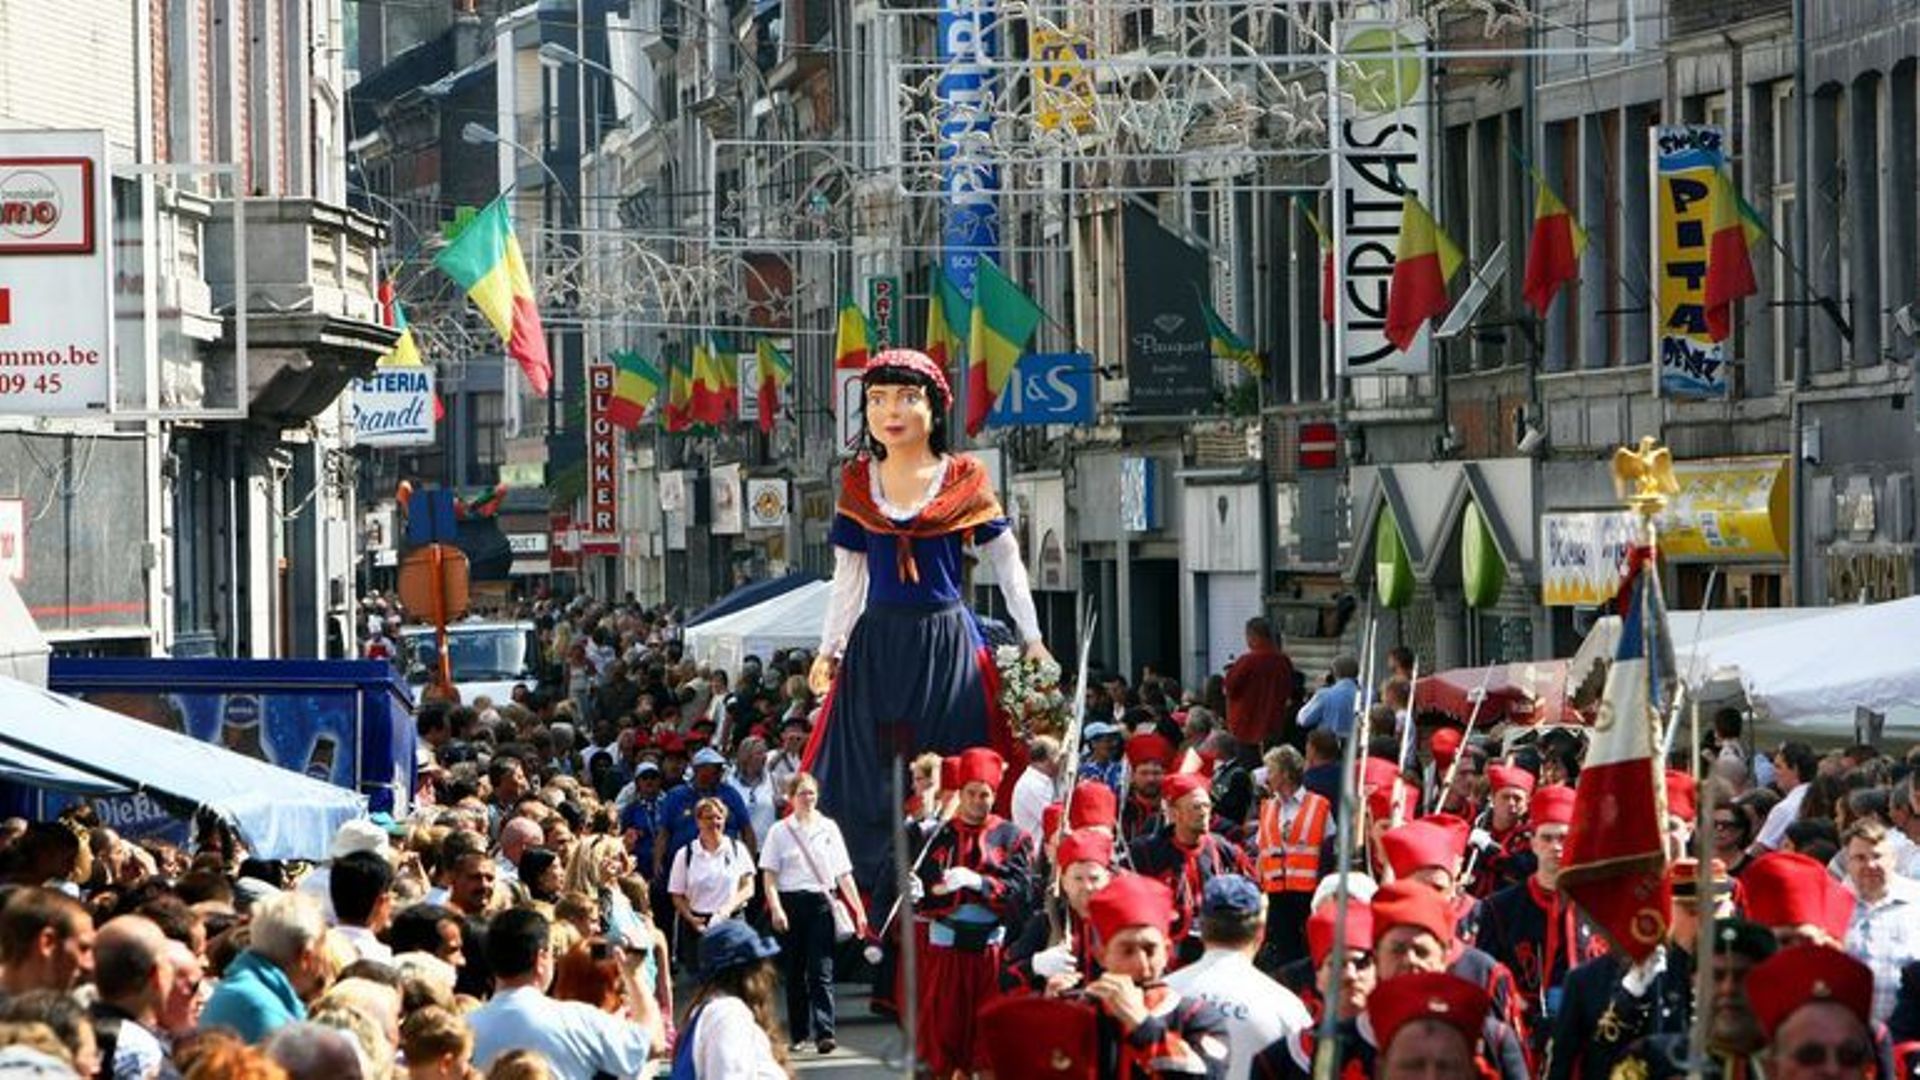 Les festivités du 15 août, un événement qui draine toujours du monde dans la Cité ardente.